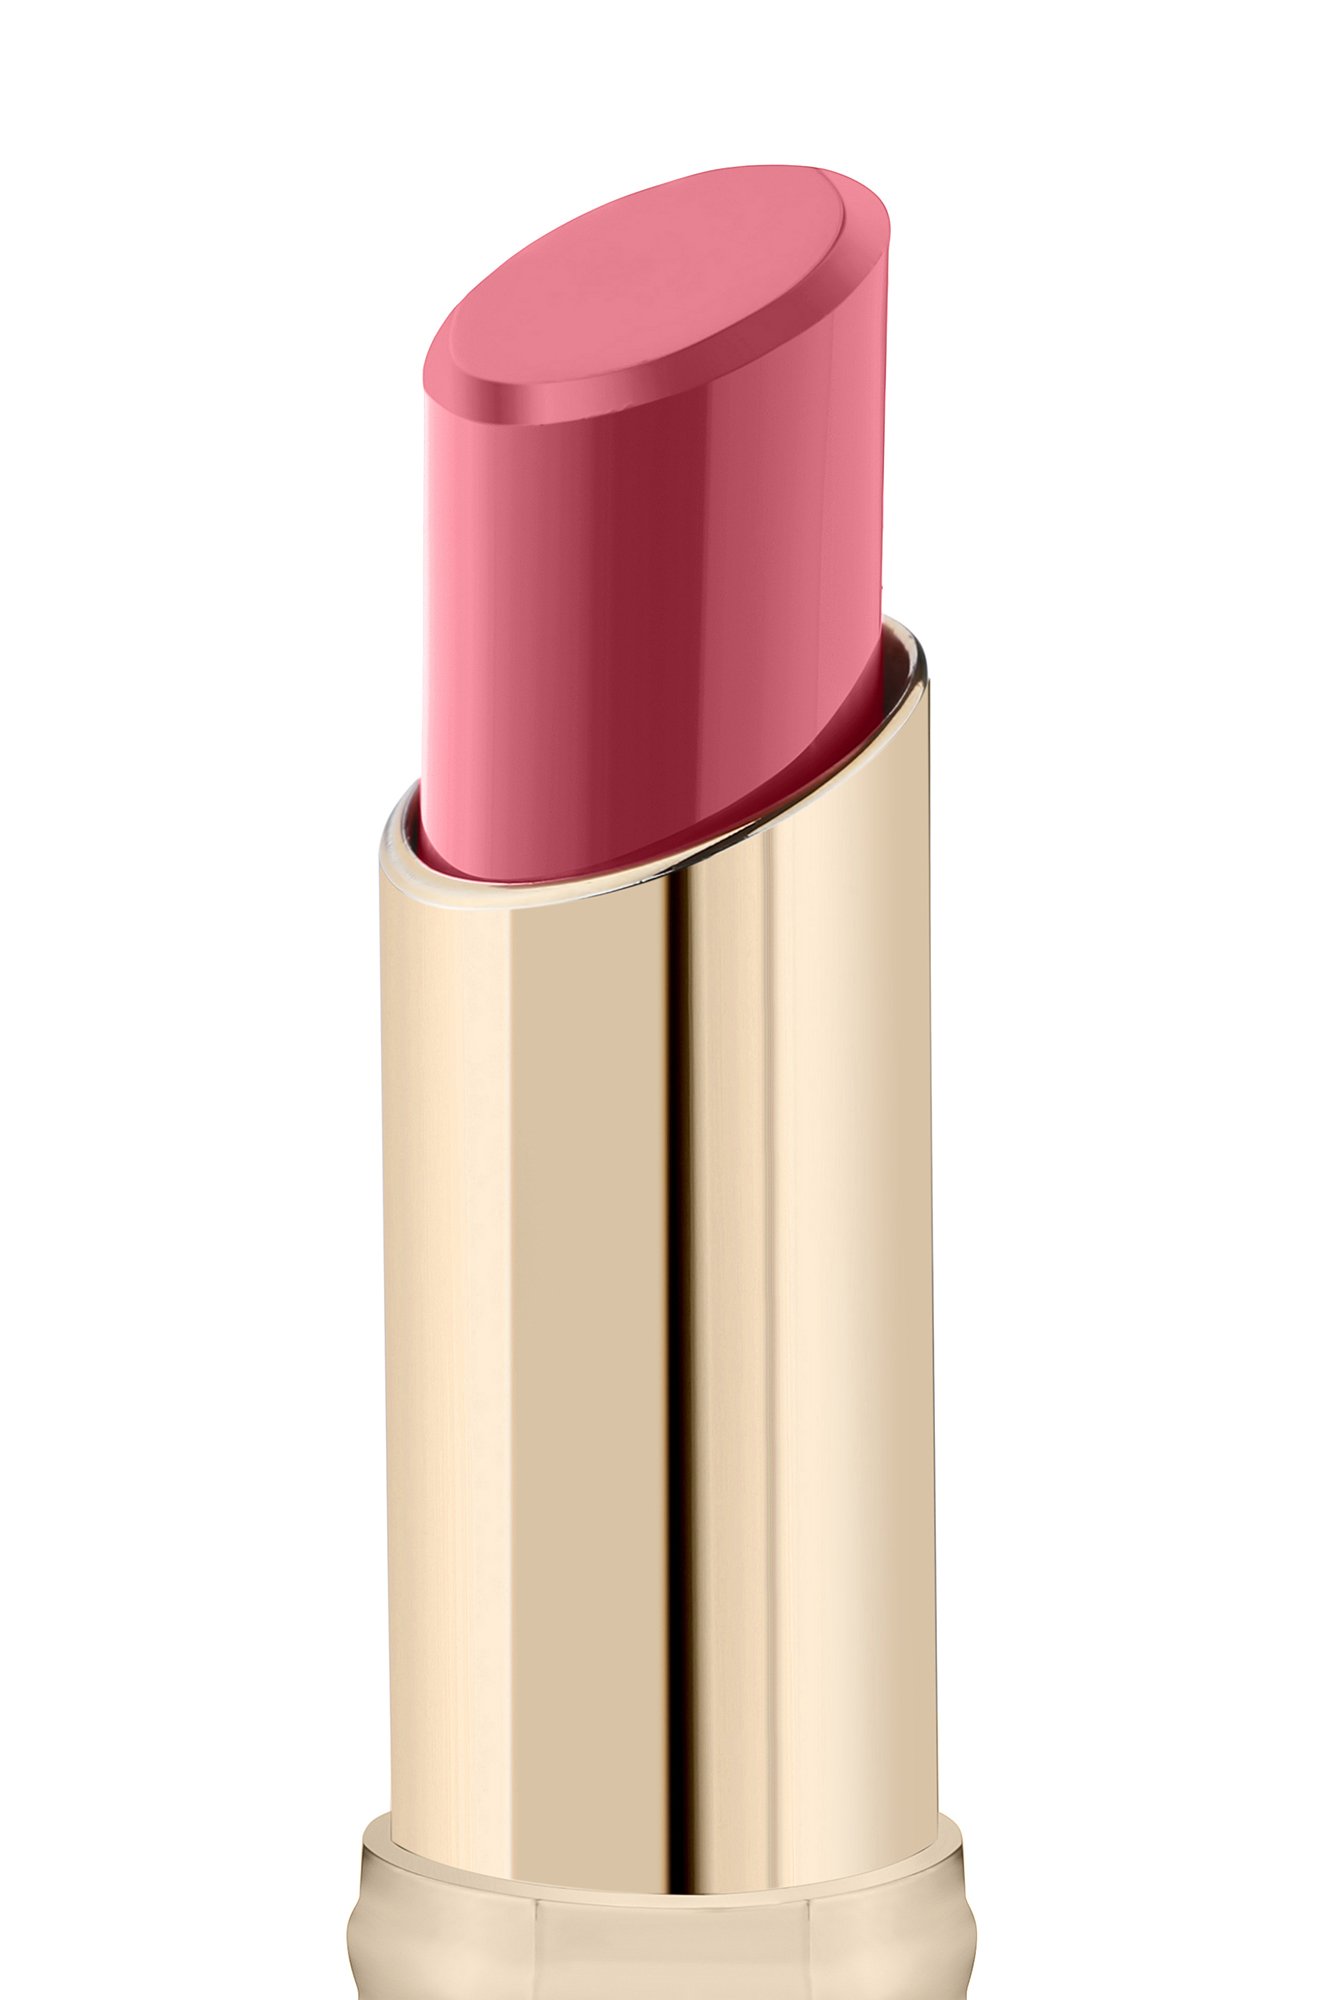 Помада для губ Lipstick Colourstudio т.402 3,6 г LAMEL Professional